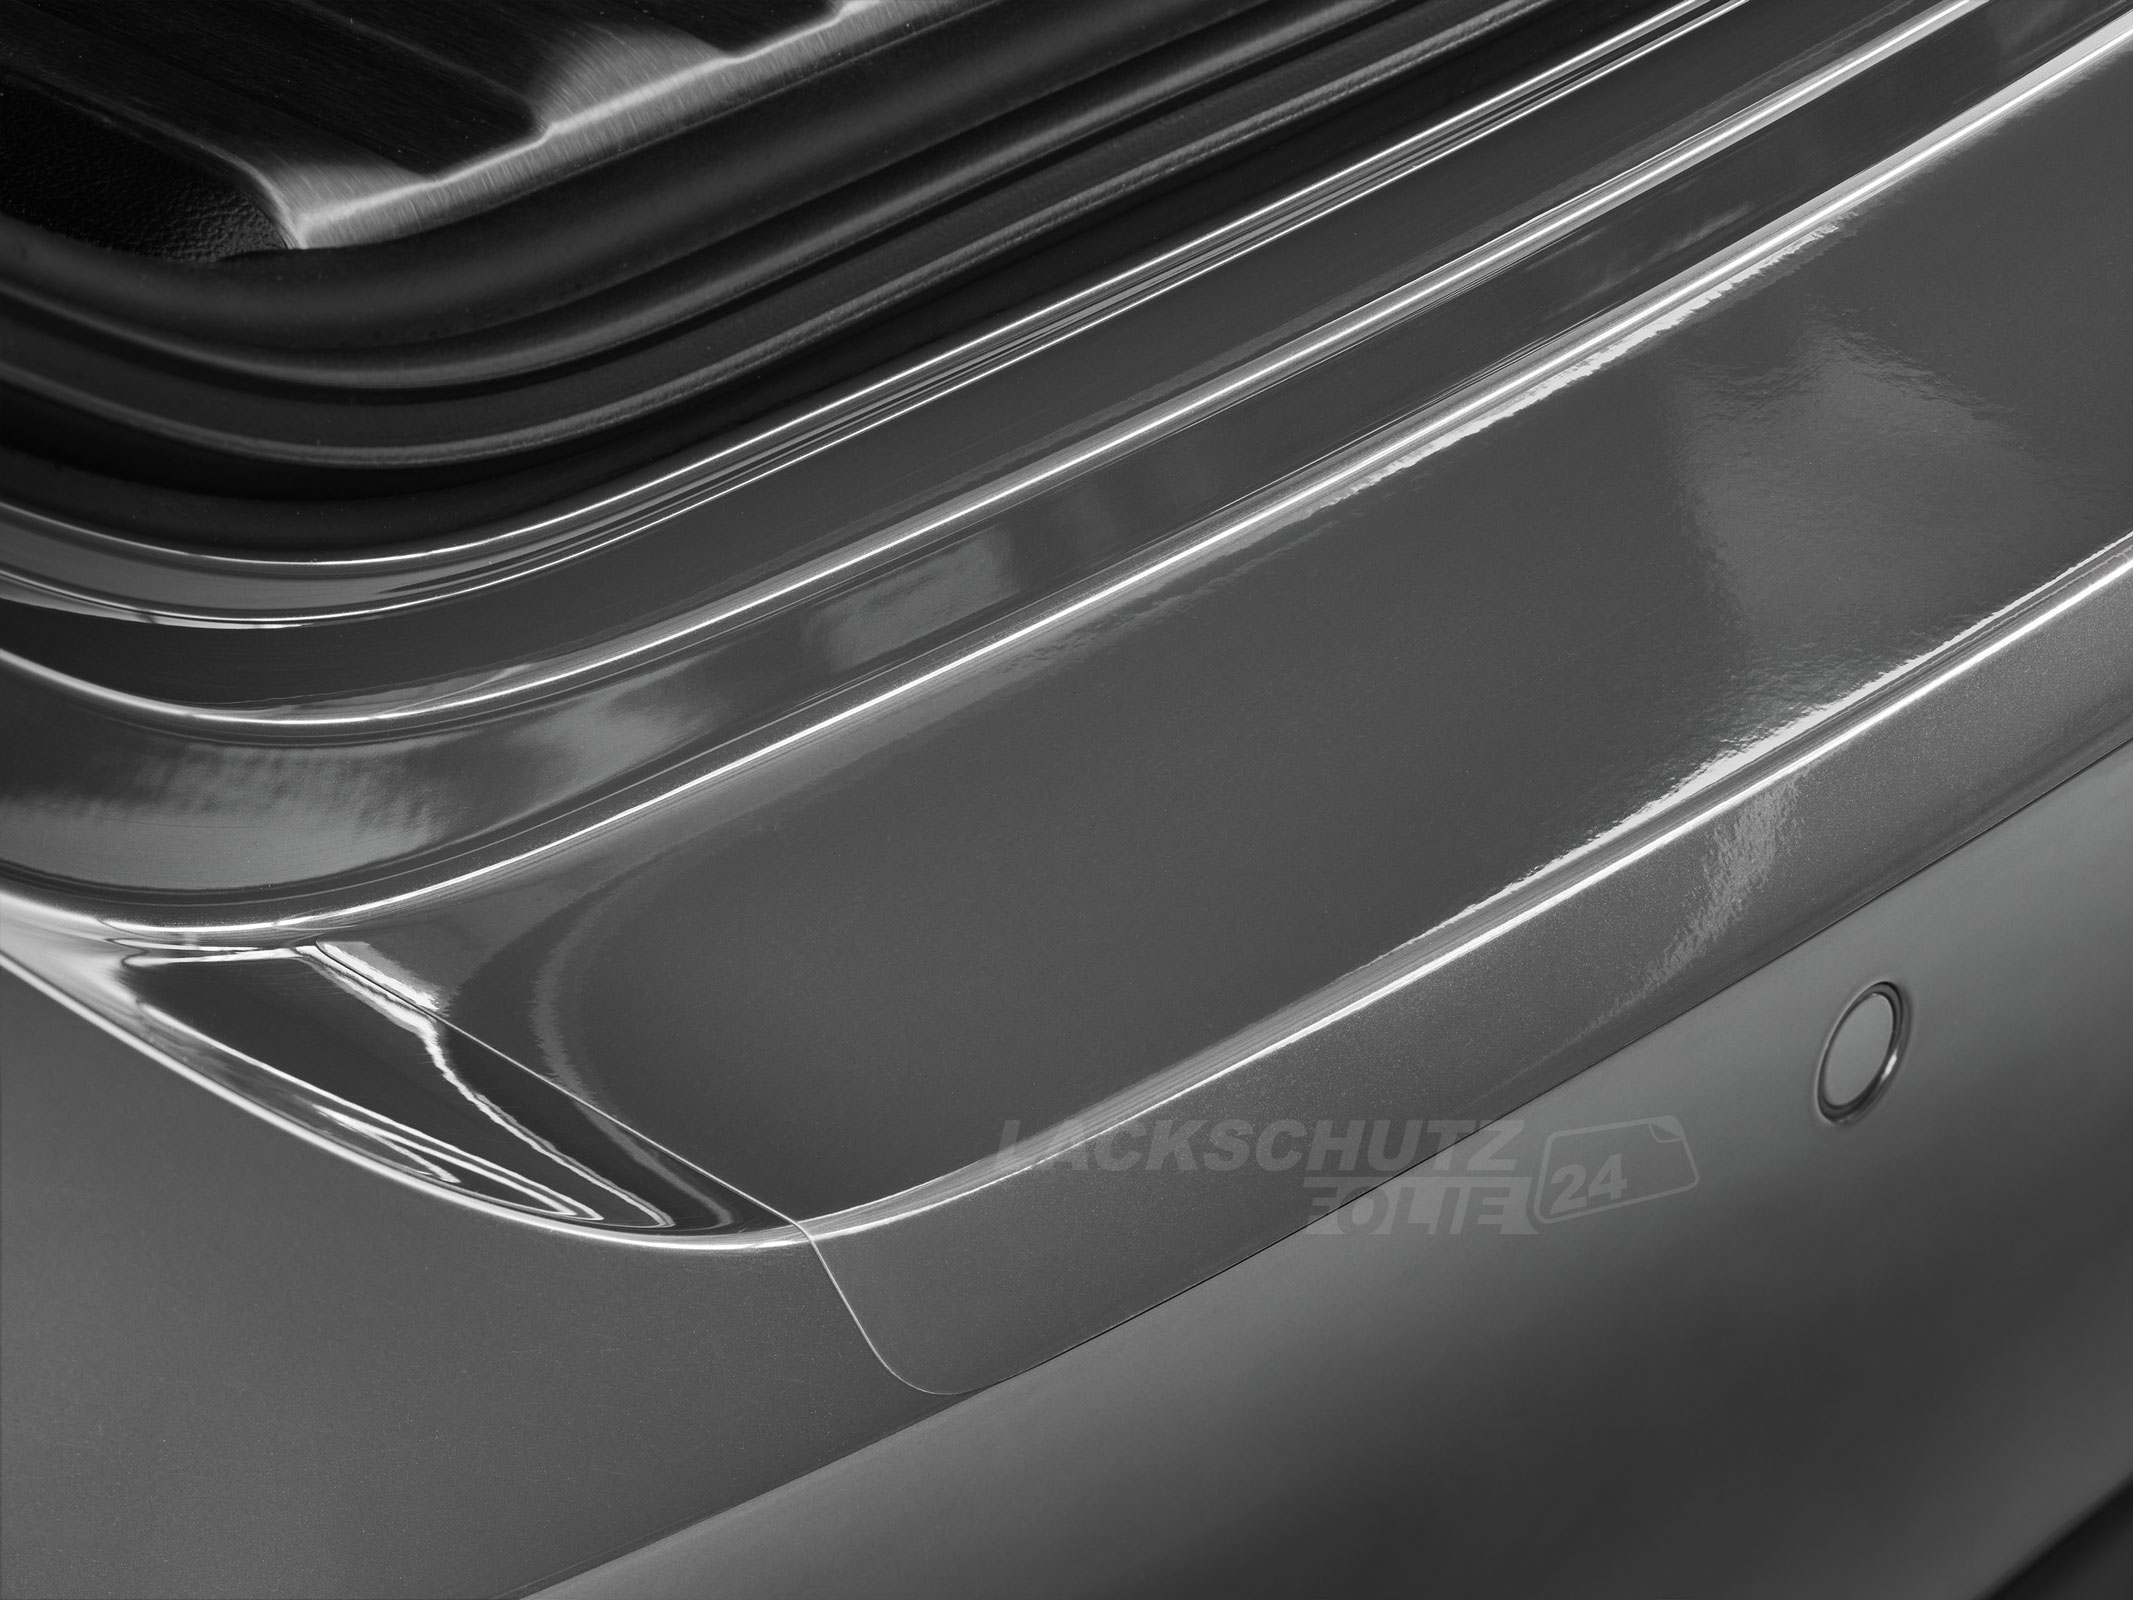 Ladekantenschutzfolie - Transparent Glatt Hochglänzend für Hyundai Santa Fe Typ DM, BJ 09/2012-2018